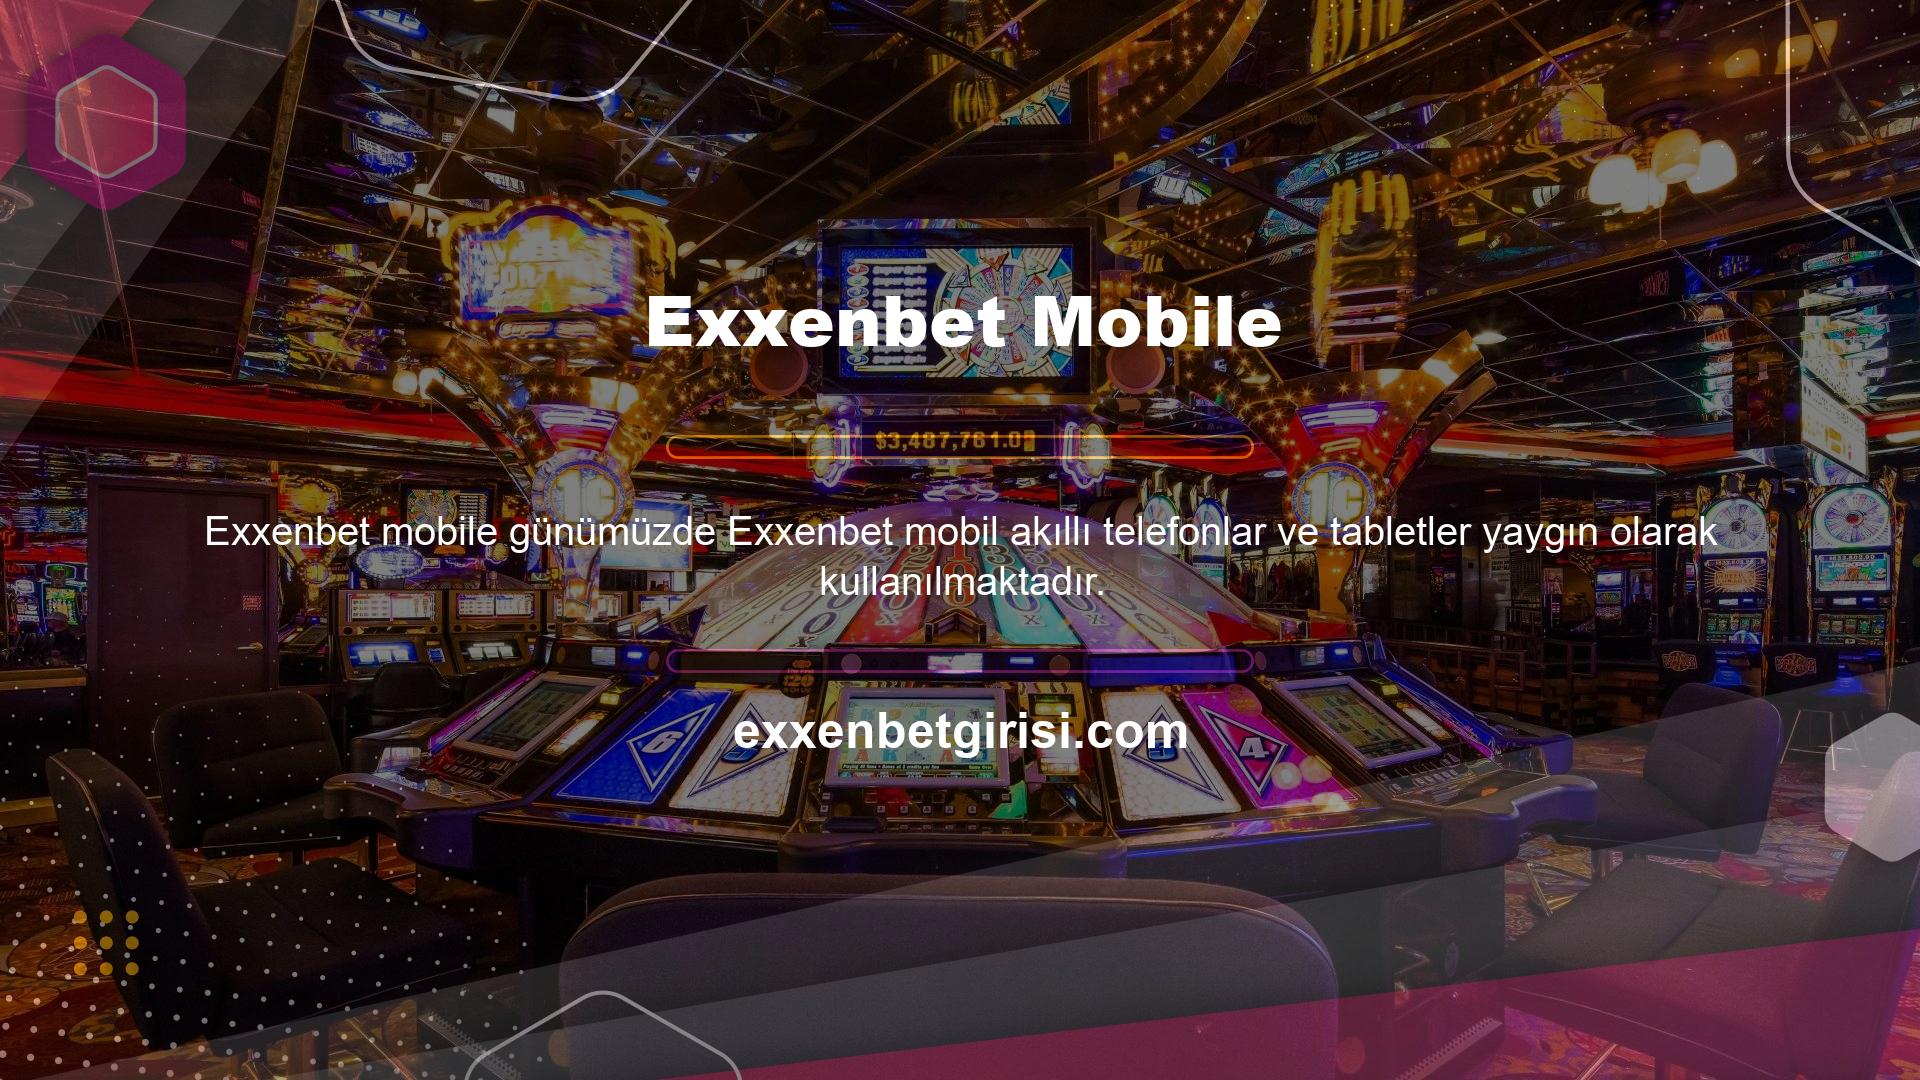 Oyun ve casino sitelerinin mobil siteleri, mobil internet kullanıcılarının ihtiyaçlarına uygun hale geldi